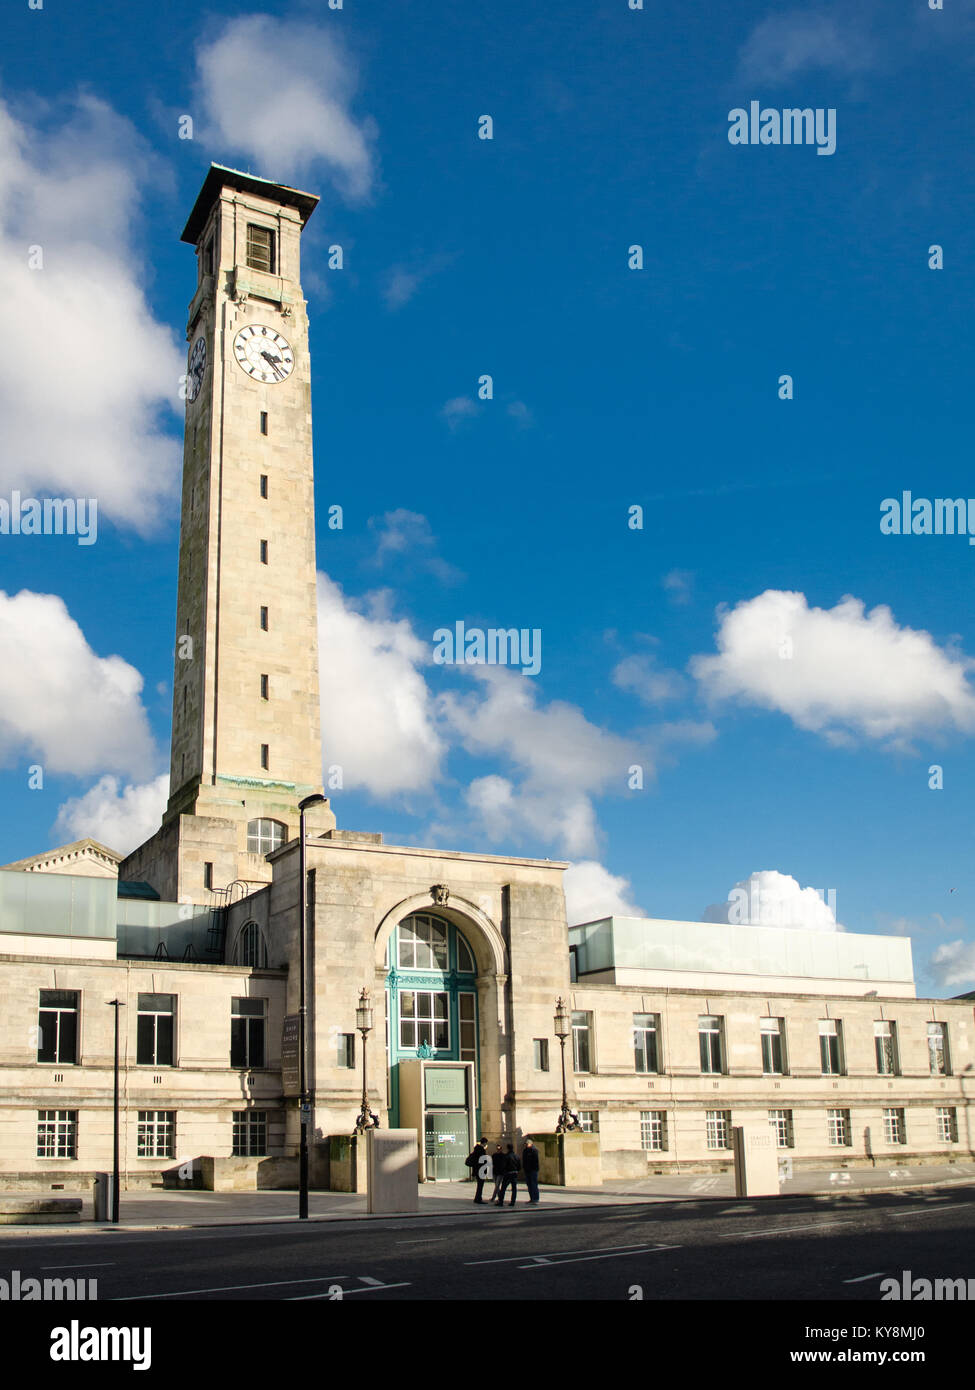 Southampton, Inglaterra, Reino Unido - 16 de febrero de 2014: el sol brilla en la fachada art deco y la torre del reloj del ala oeste de Southampton Civic Center. Foto de stock